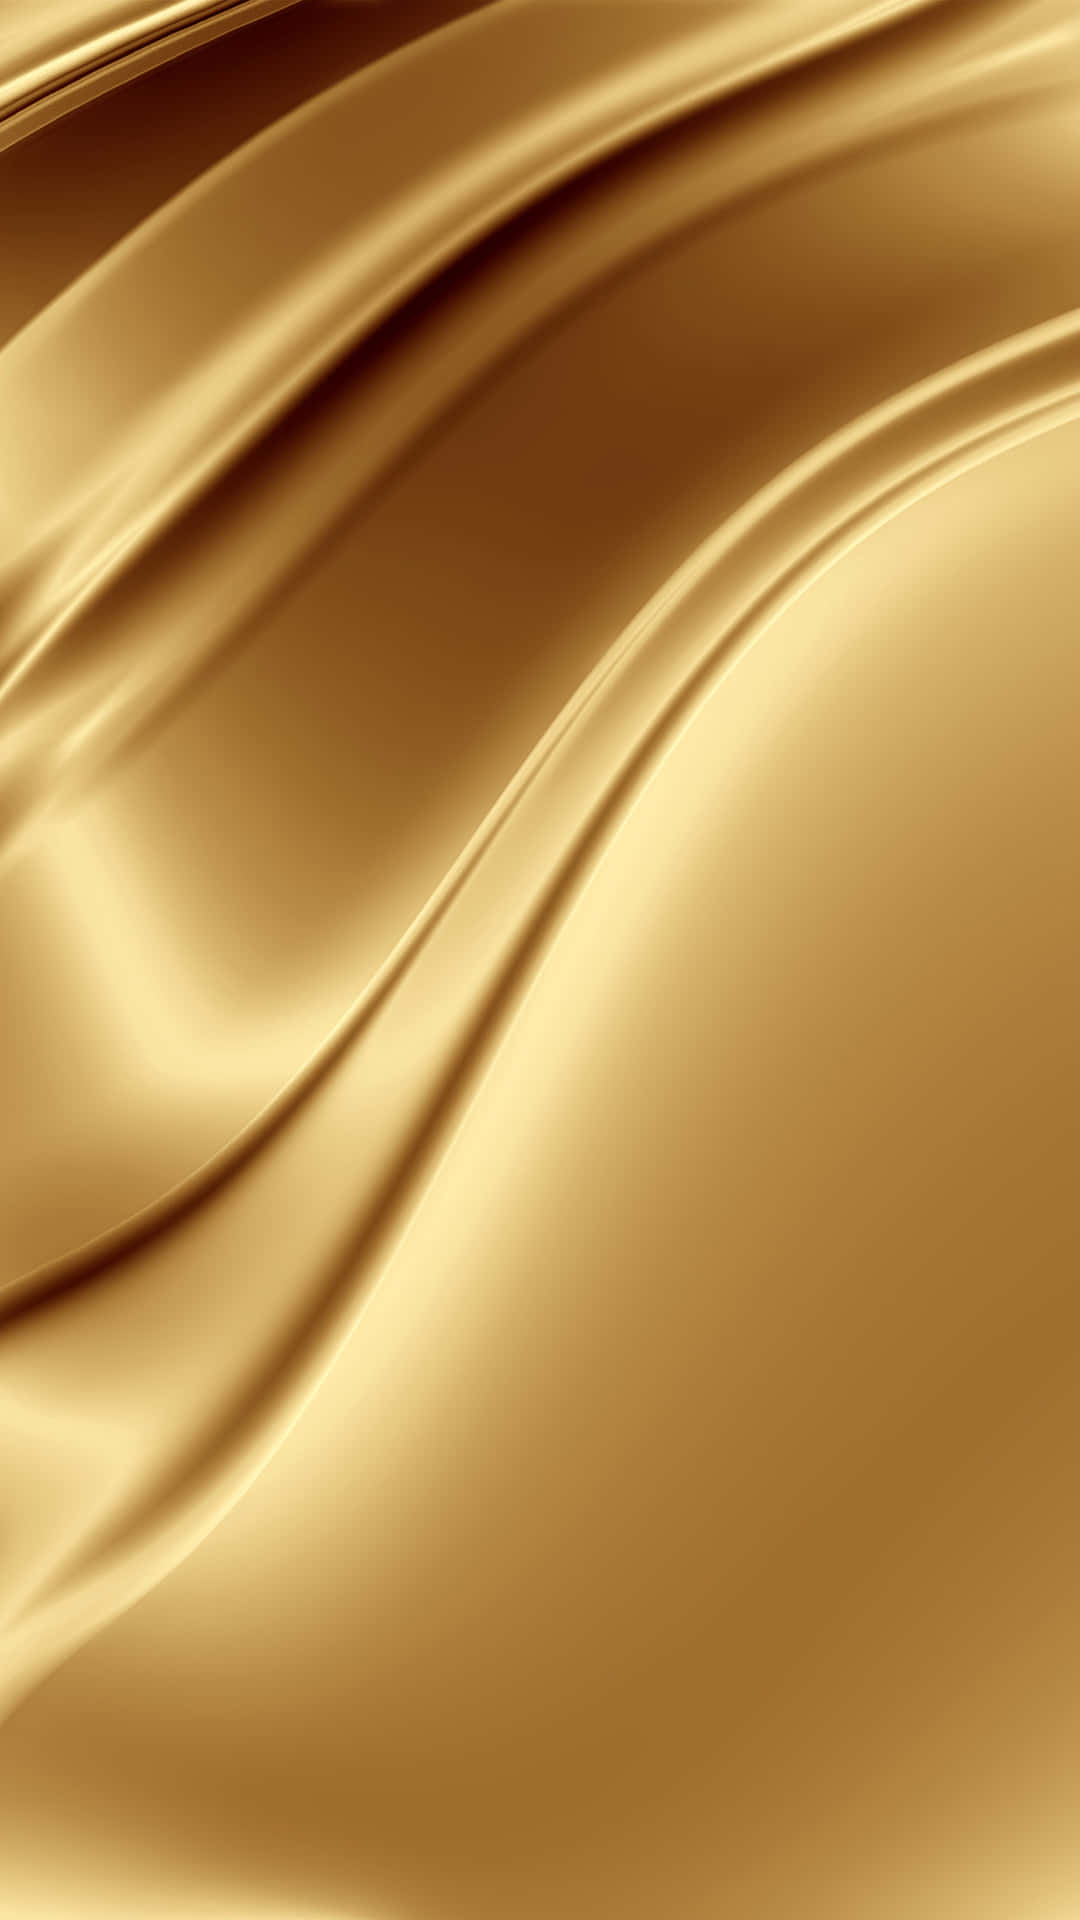 Gold IPhone Liquid Metal Texture Wallpaper